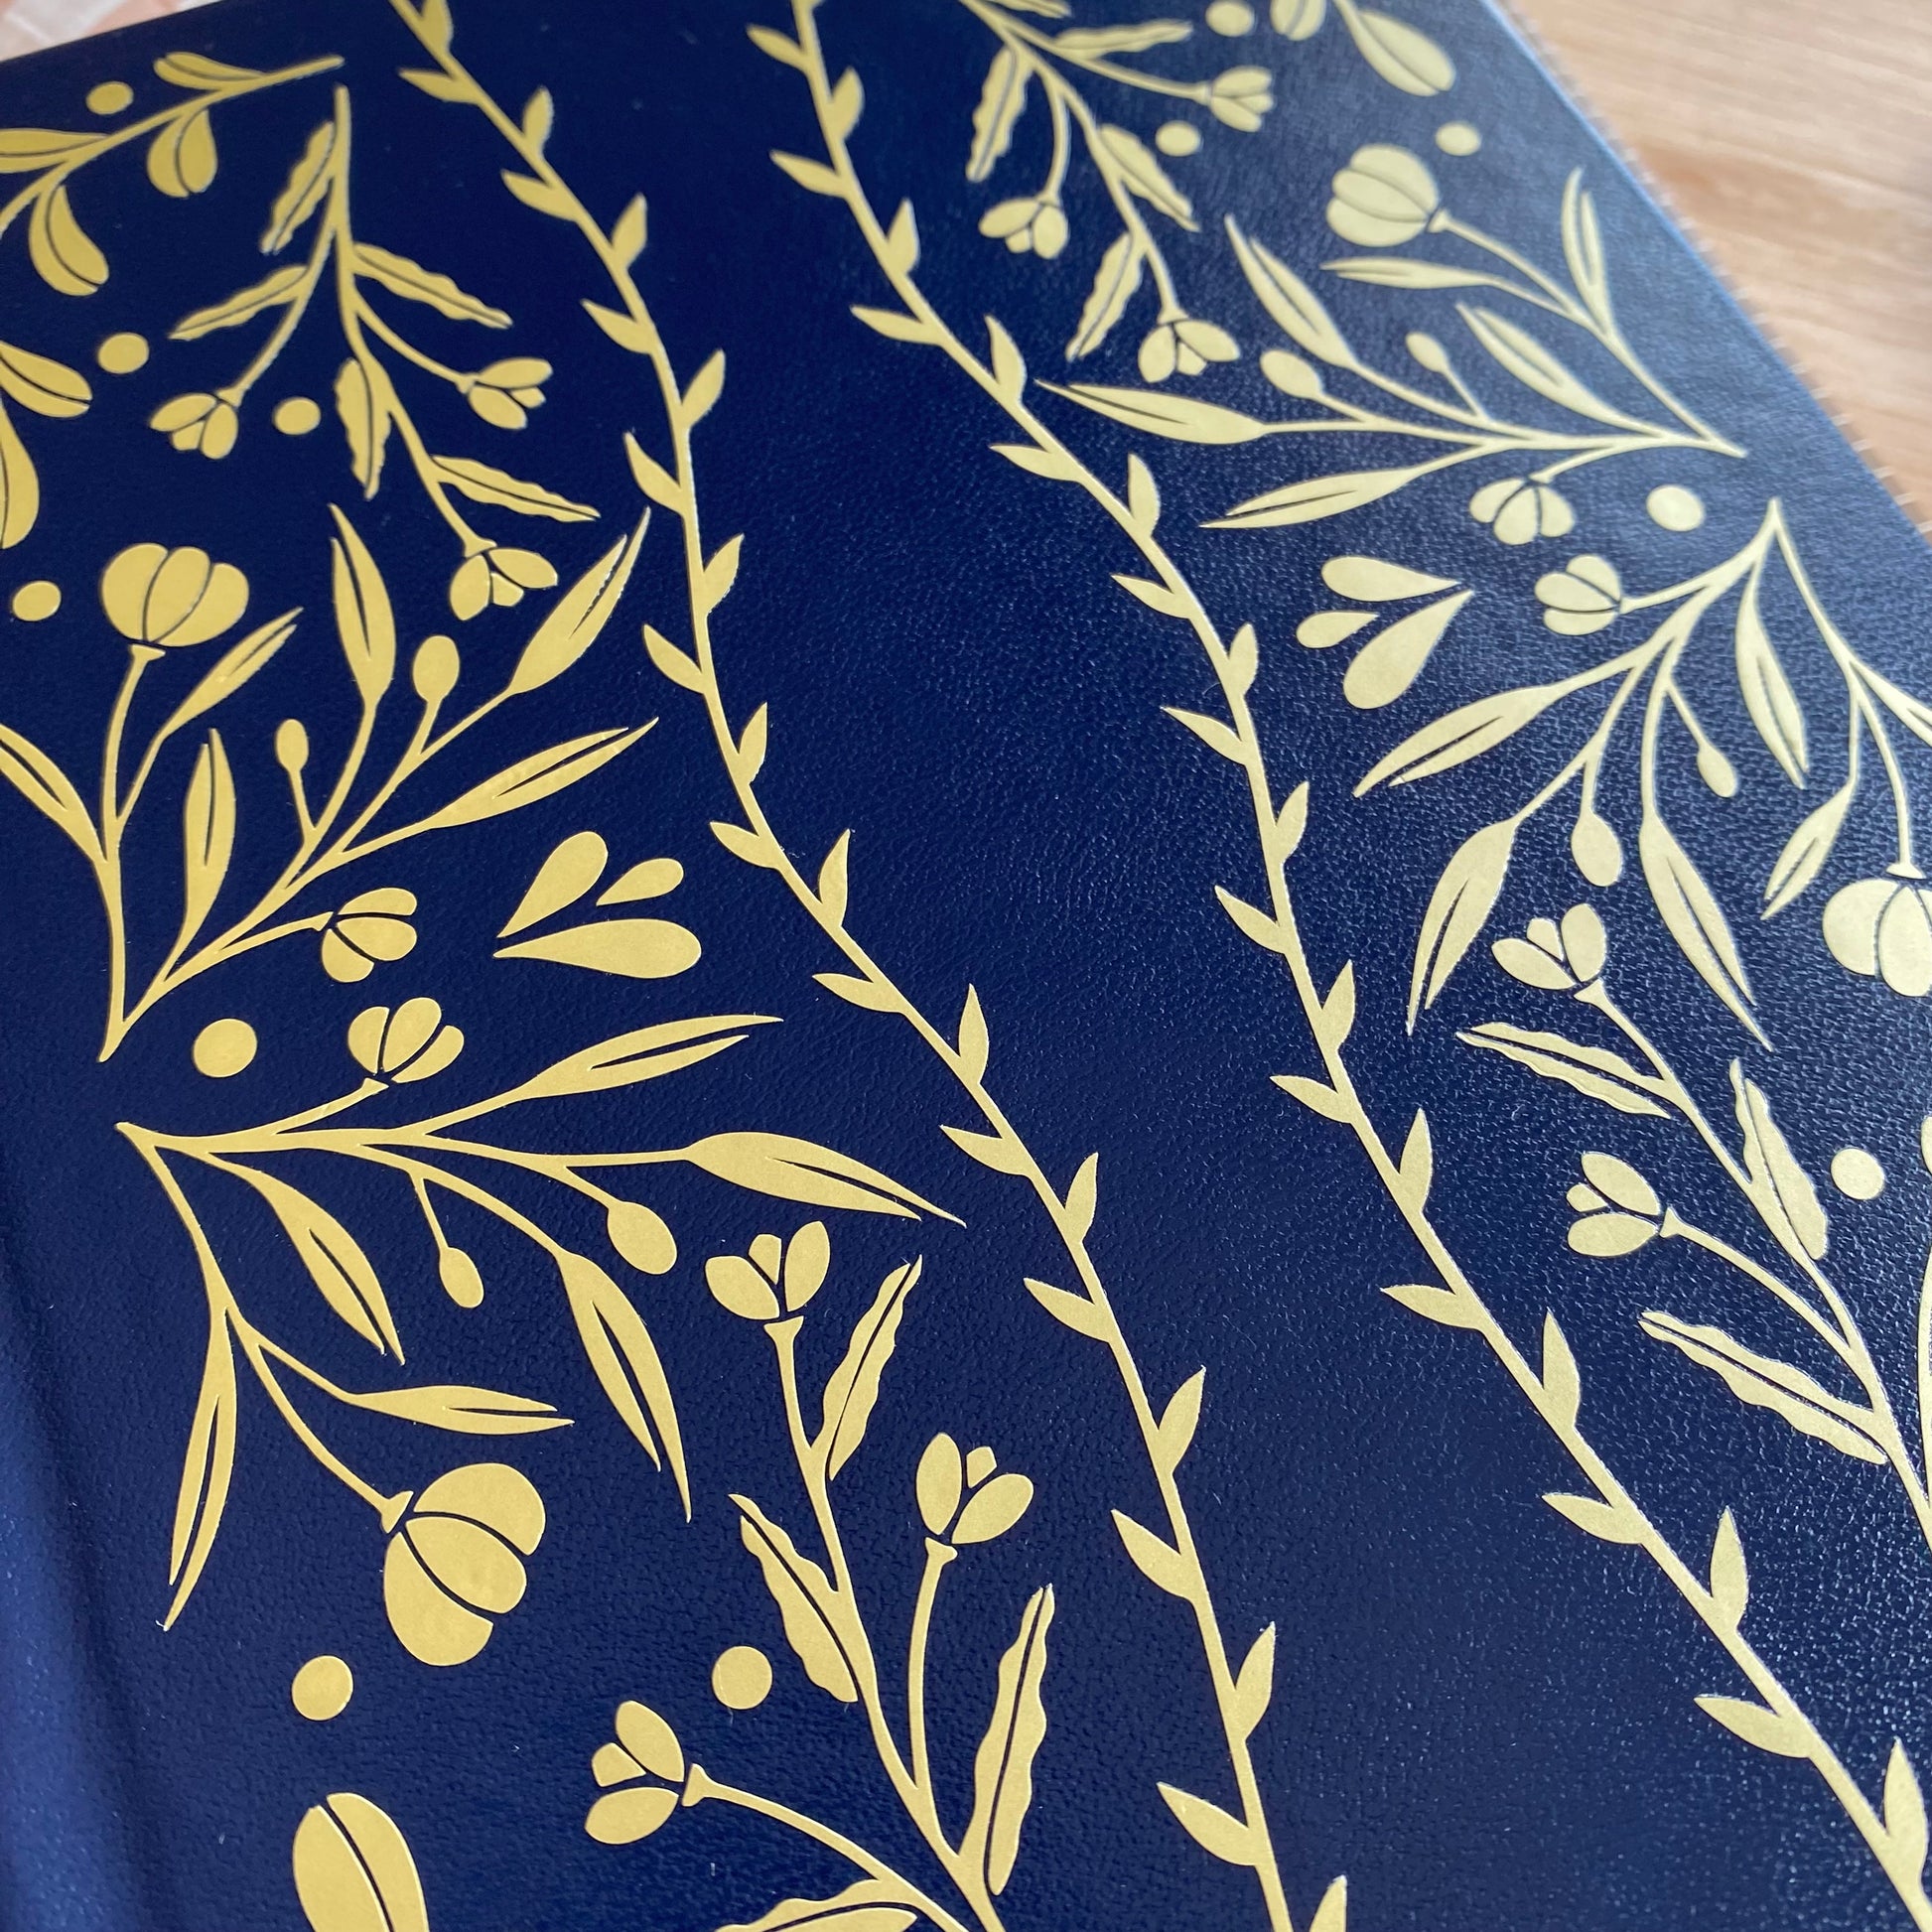 növényes mintájú kék borító bullet journal füzet arany mintával